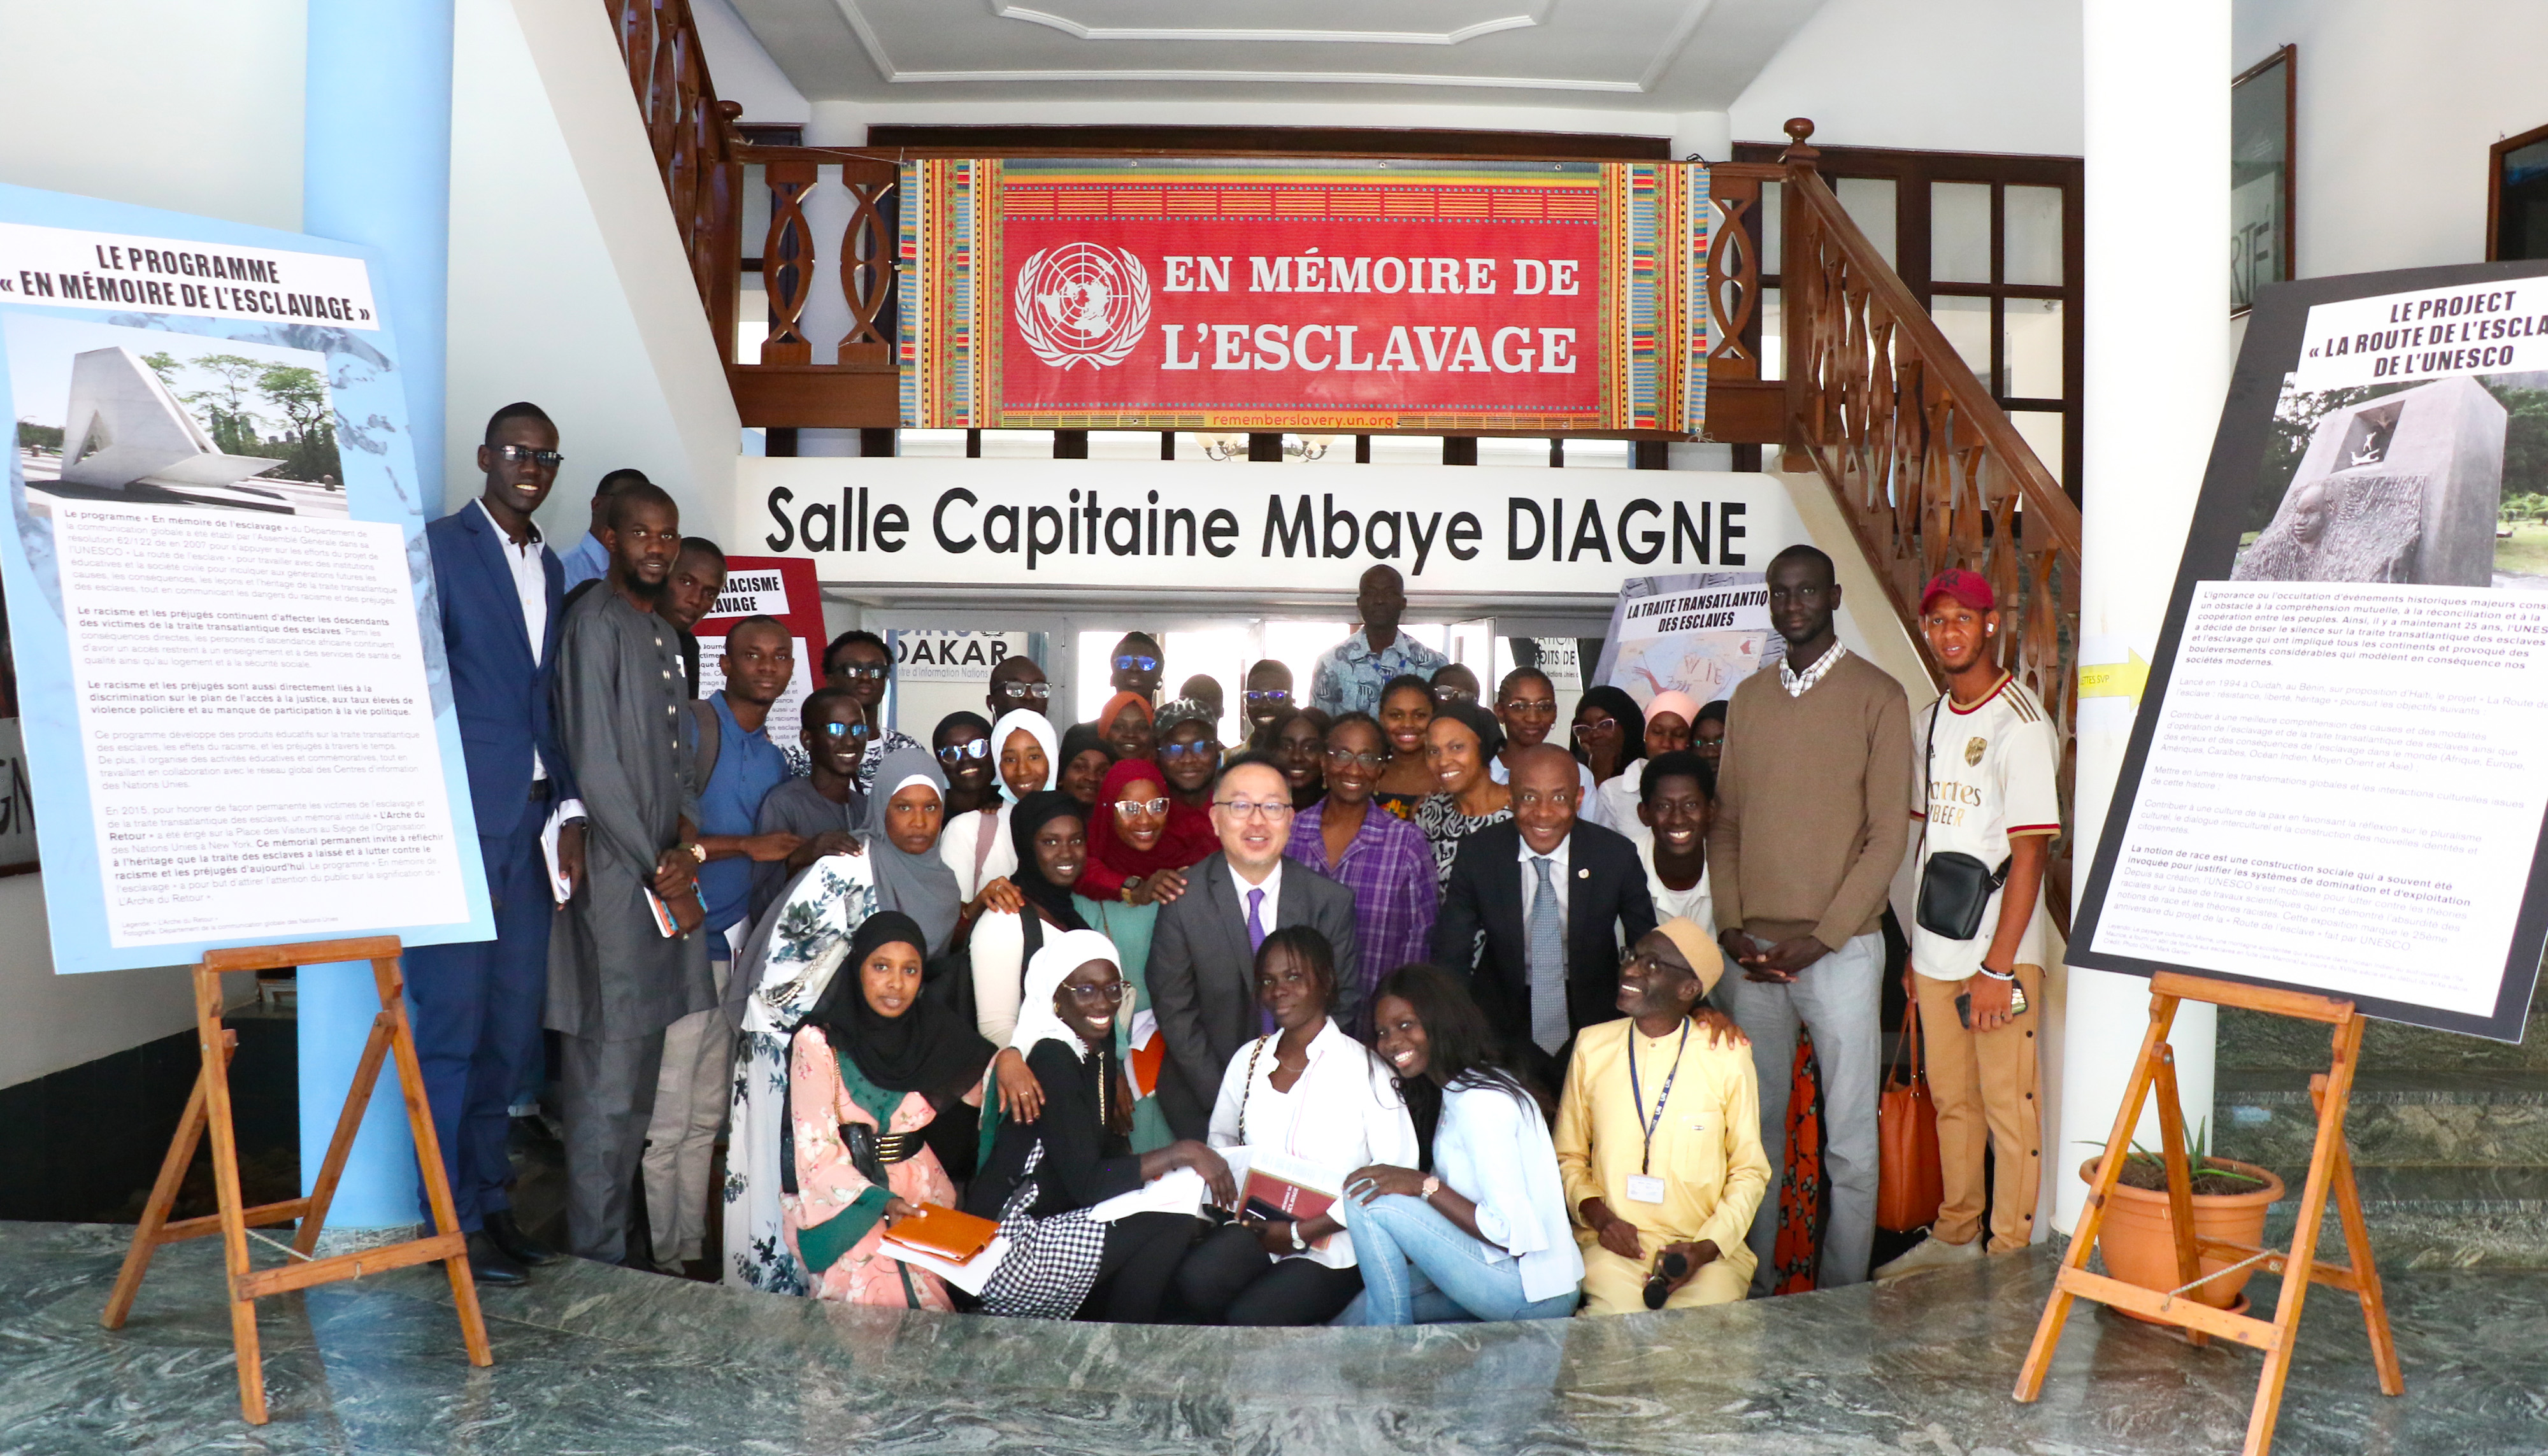  Le Centre d'Information des Nations Unies à Dakar a organisé un événement éducatif le 24 avril pour se souvenir des victimes de l'esclavage et de la traite transatlantique des esclaves.